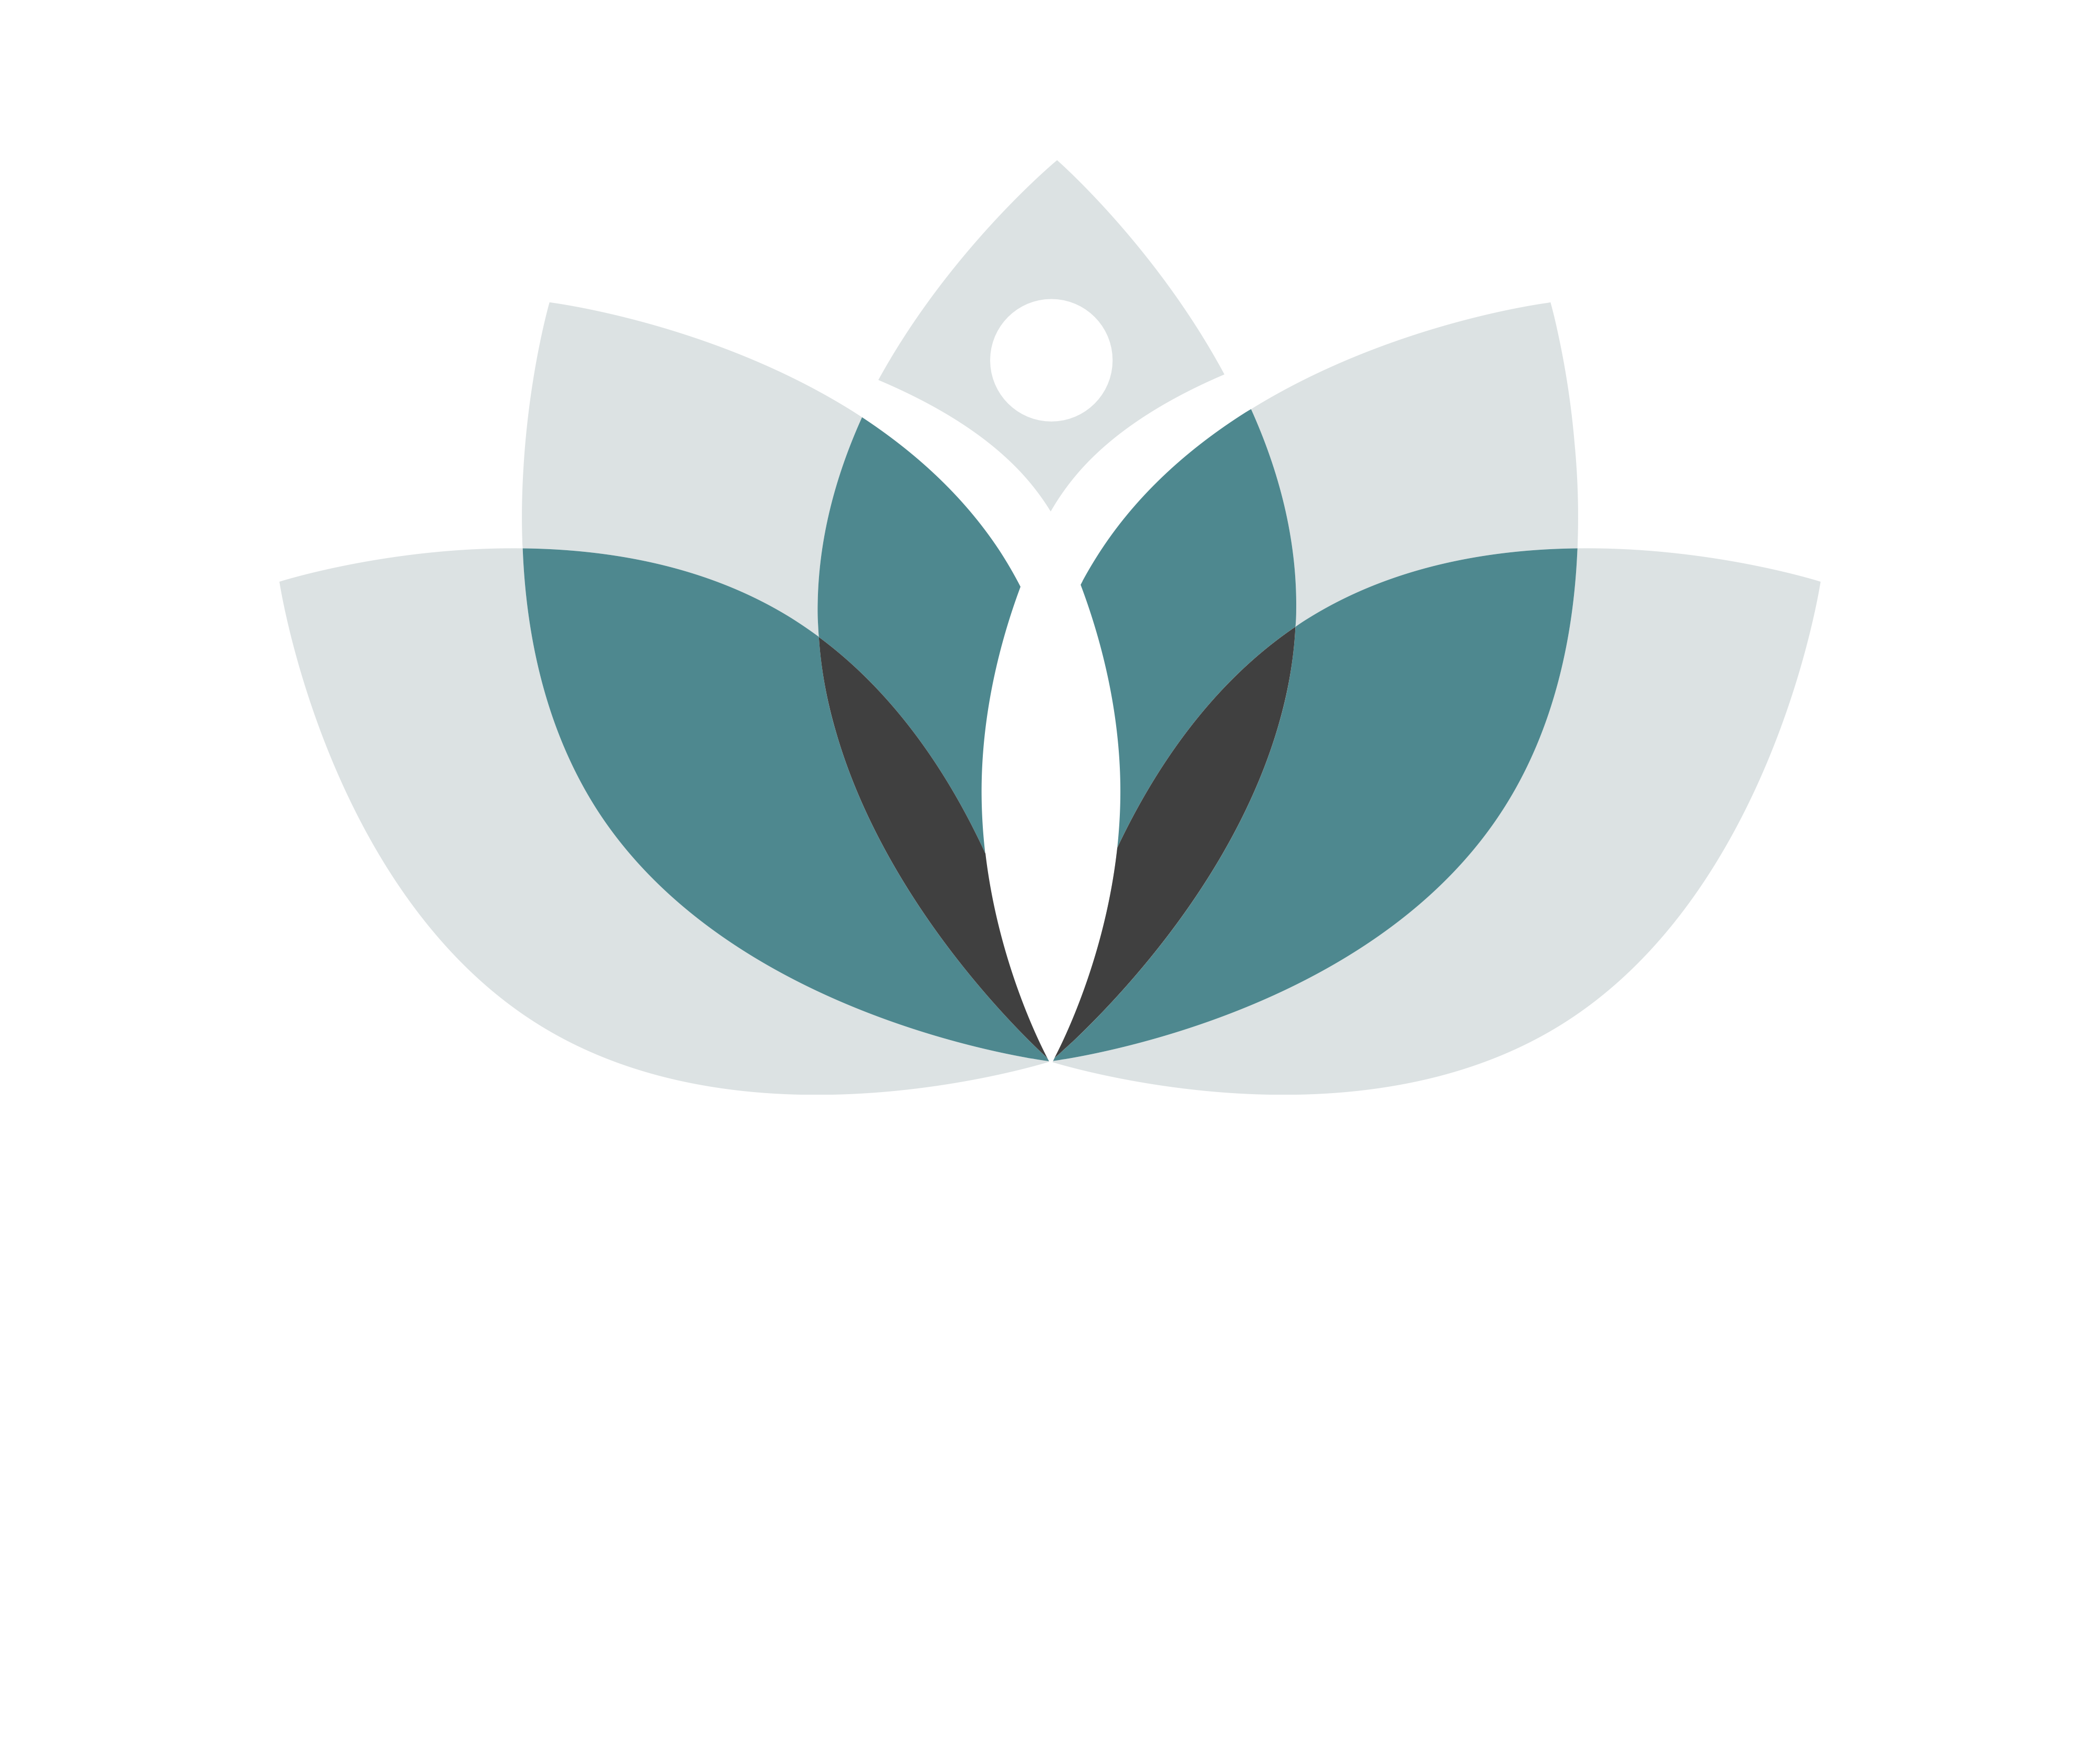 MeditBuddy  Guided  Meditation  App  Logo